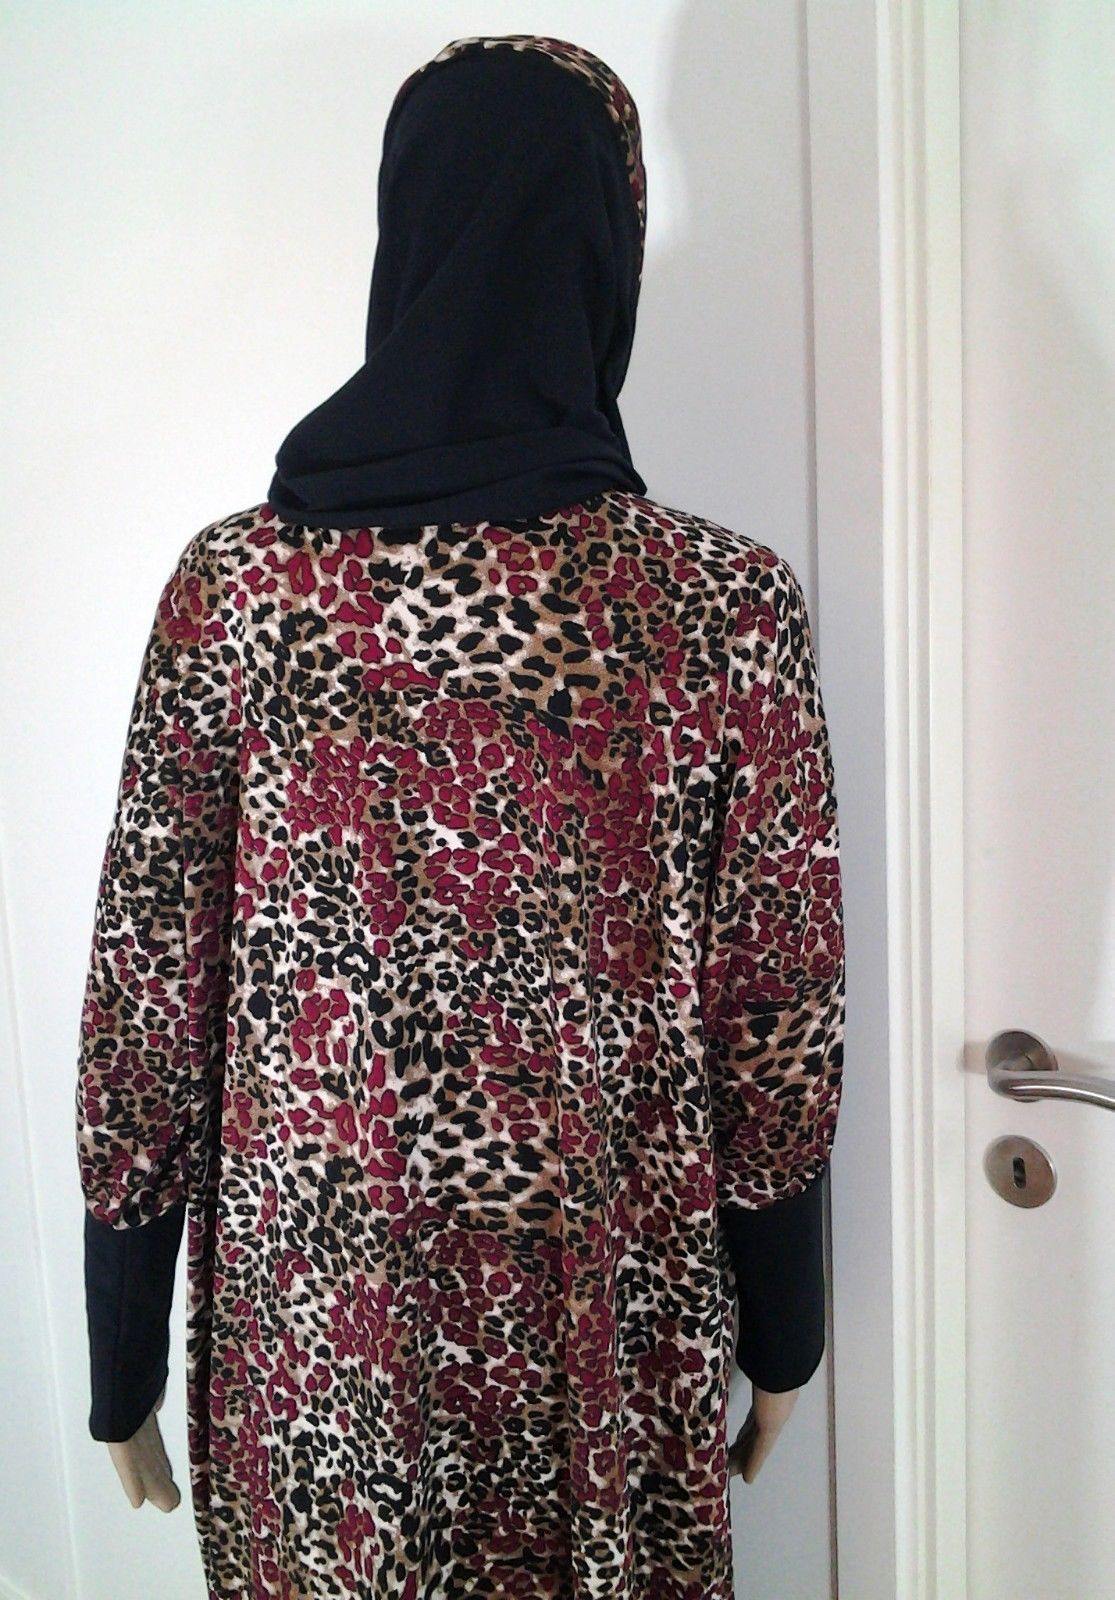 Ladies Muslim Dresses Clothing Arab Isdal